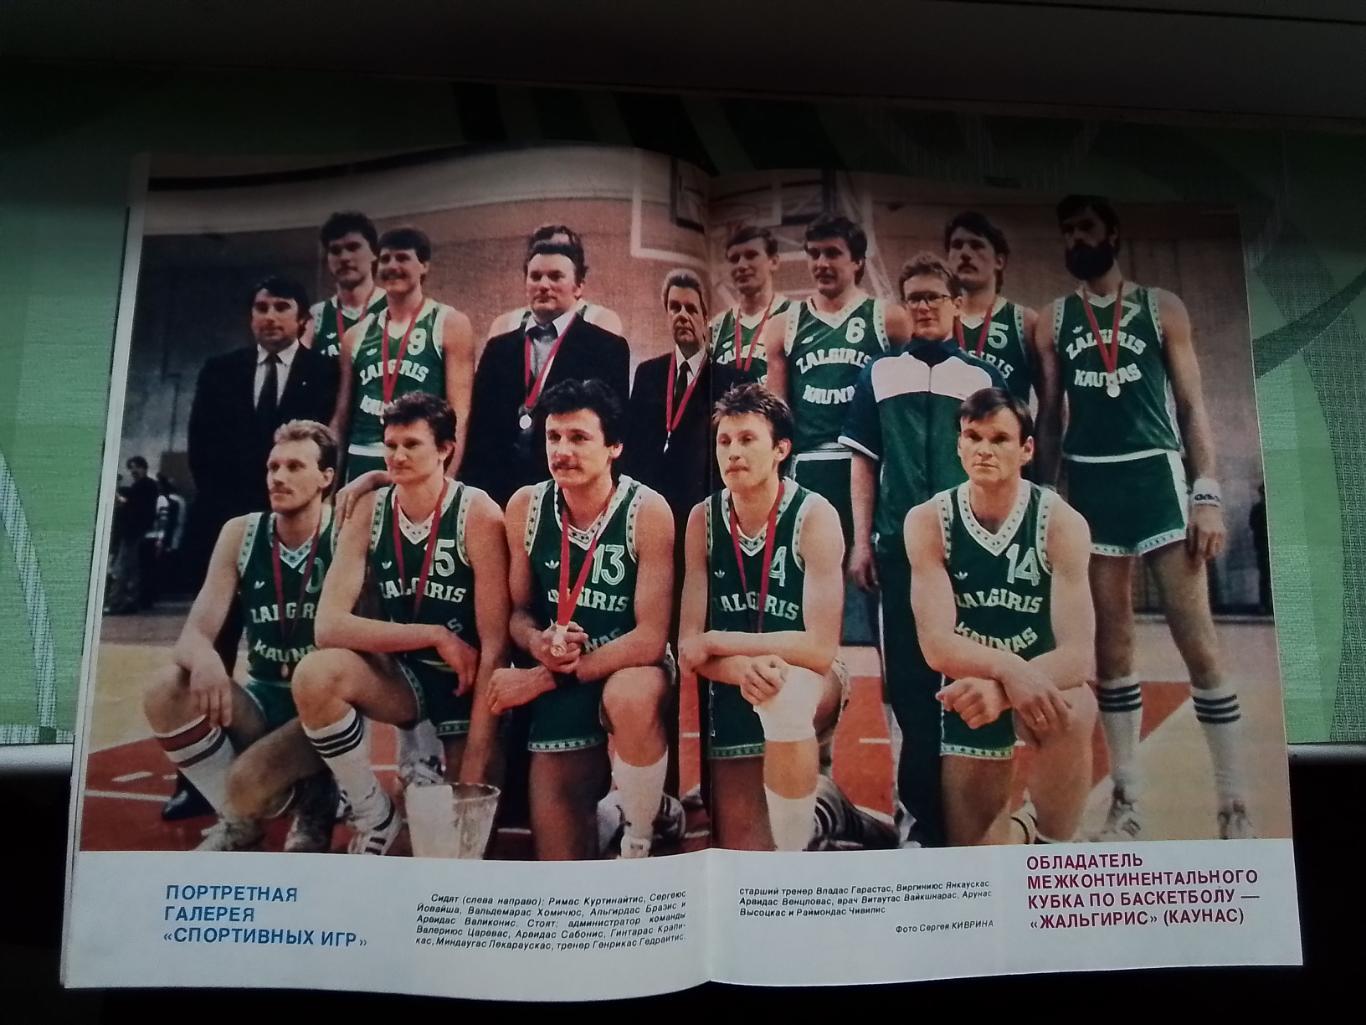 Журнал Спортивные игры 1987 3 Каунас обладатель межконт Кубка М Якушин ДМ - НБА 2